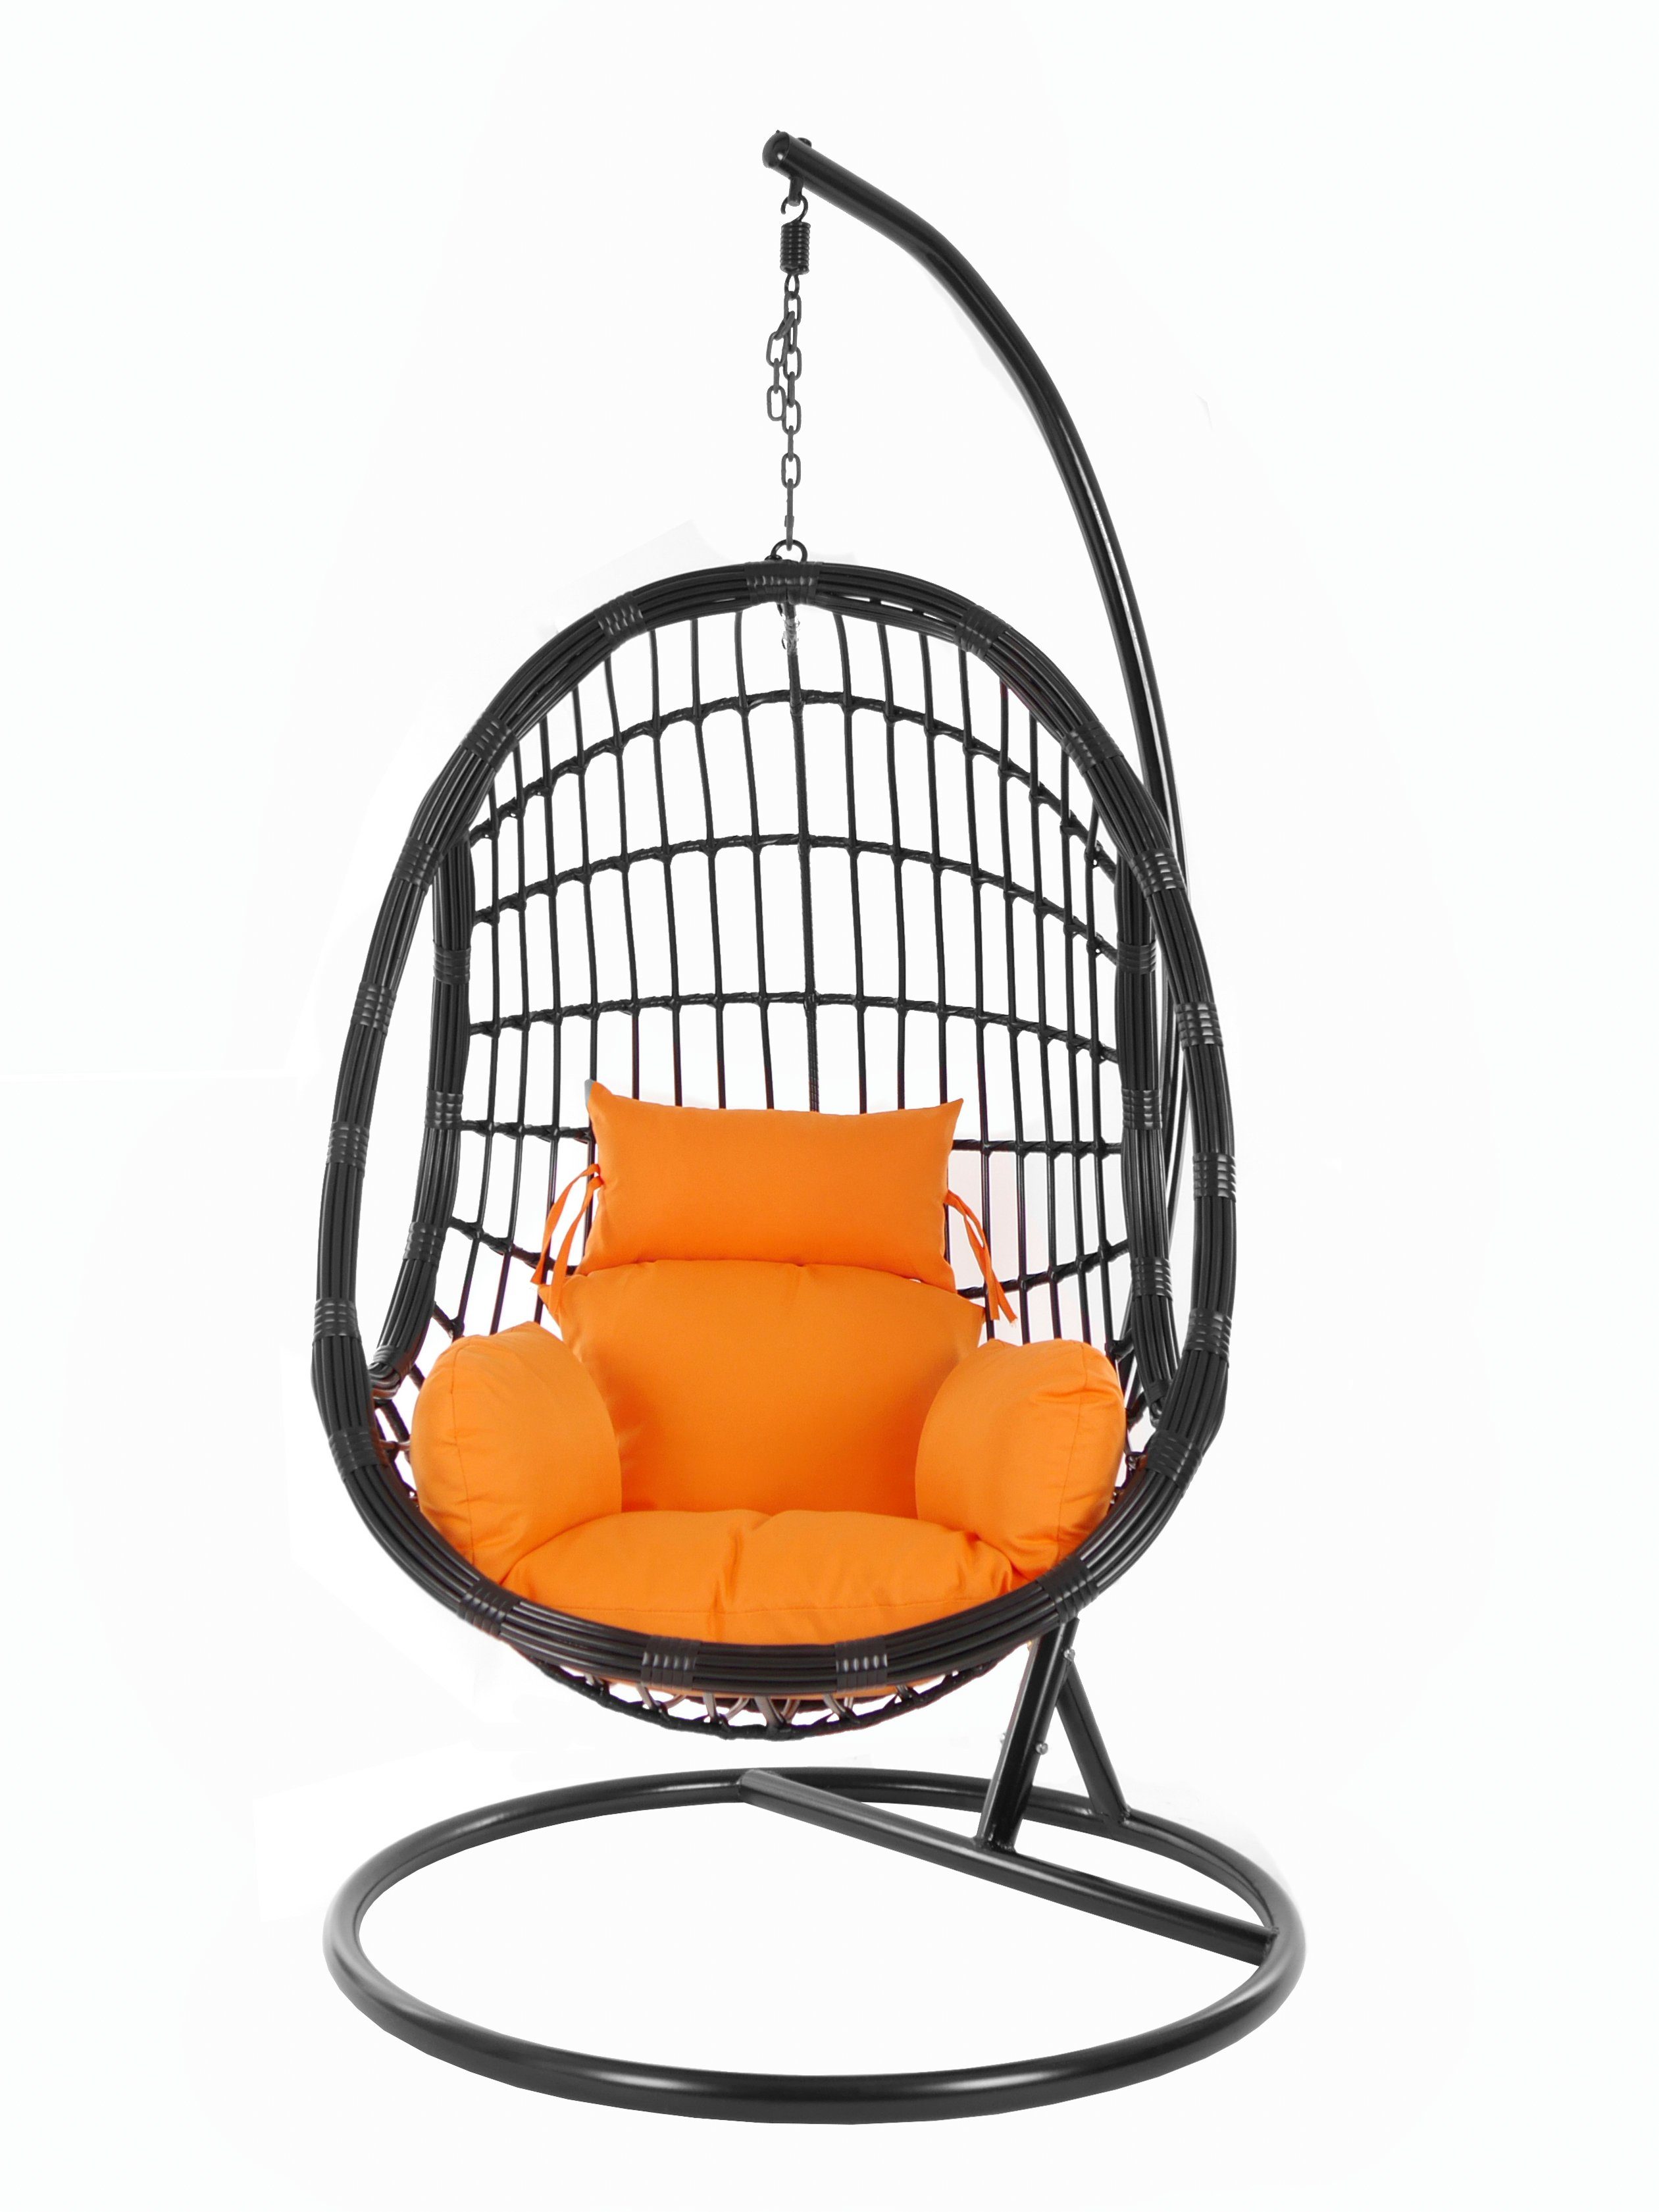 Nest-Kissen Chair, KIDEO PALMANOVA tangerine) (3030 Hängesessel Kissen, Schwebesessel, orange Swing und black, mit Gestell Hängesessel